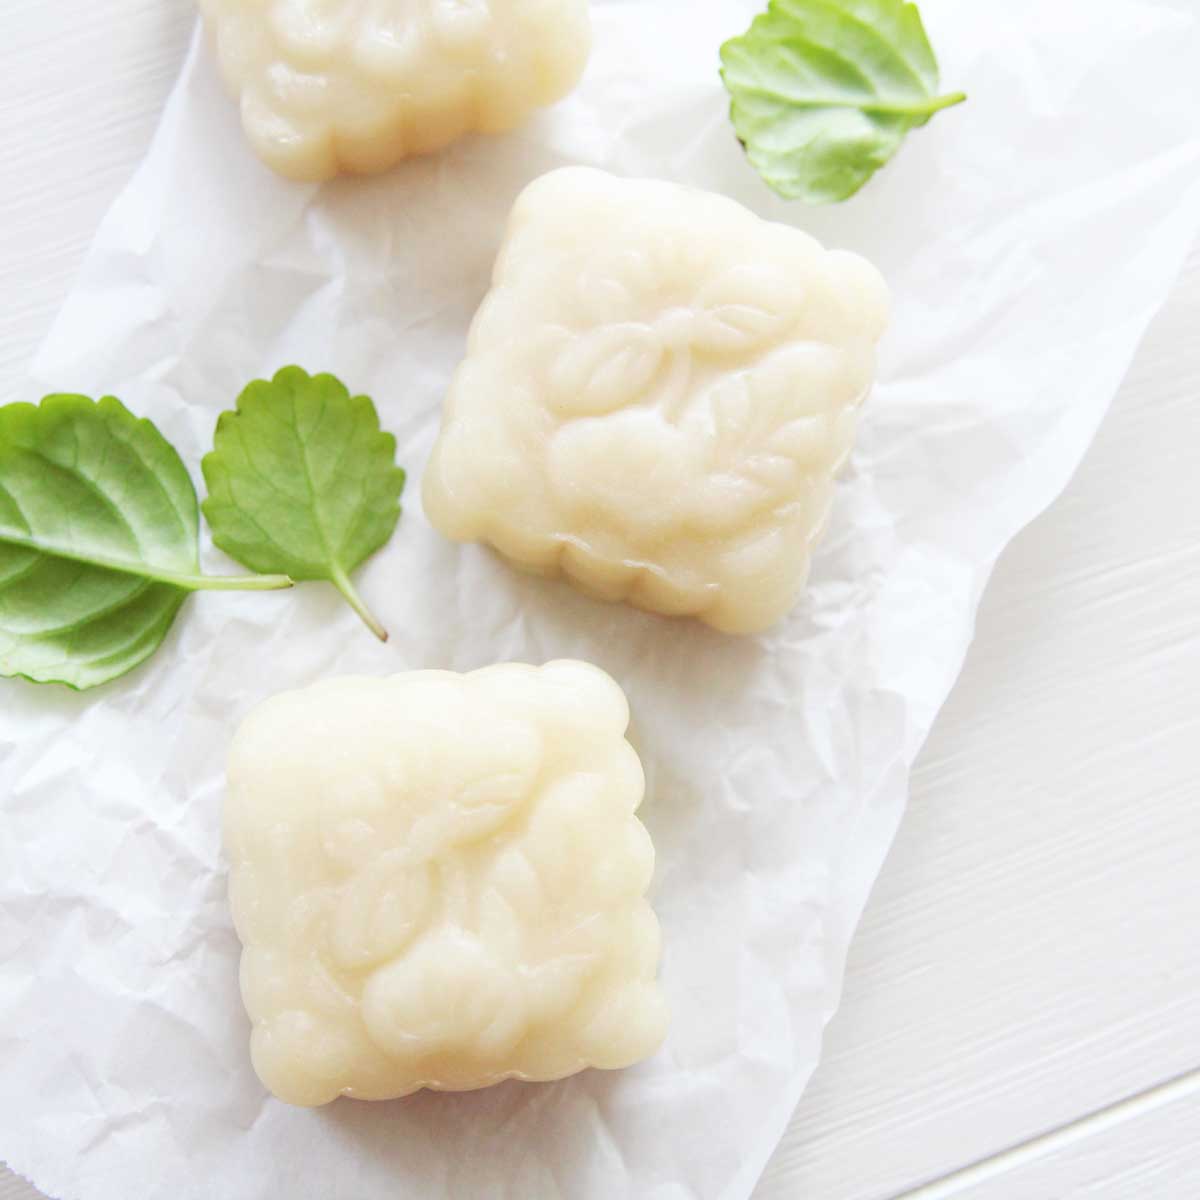 Easy 3-Ingredient Shortcut Snowskin Mooncakes Recipe (Gluten Free, Vegan) - Japanese Matcha Roll Cake